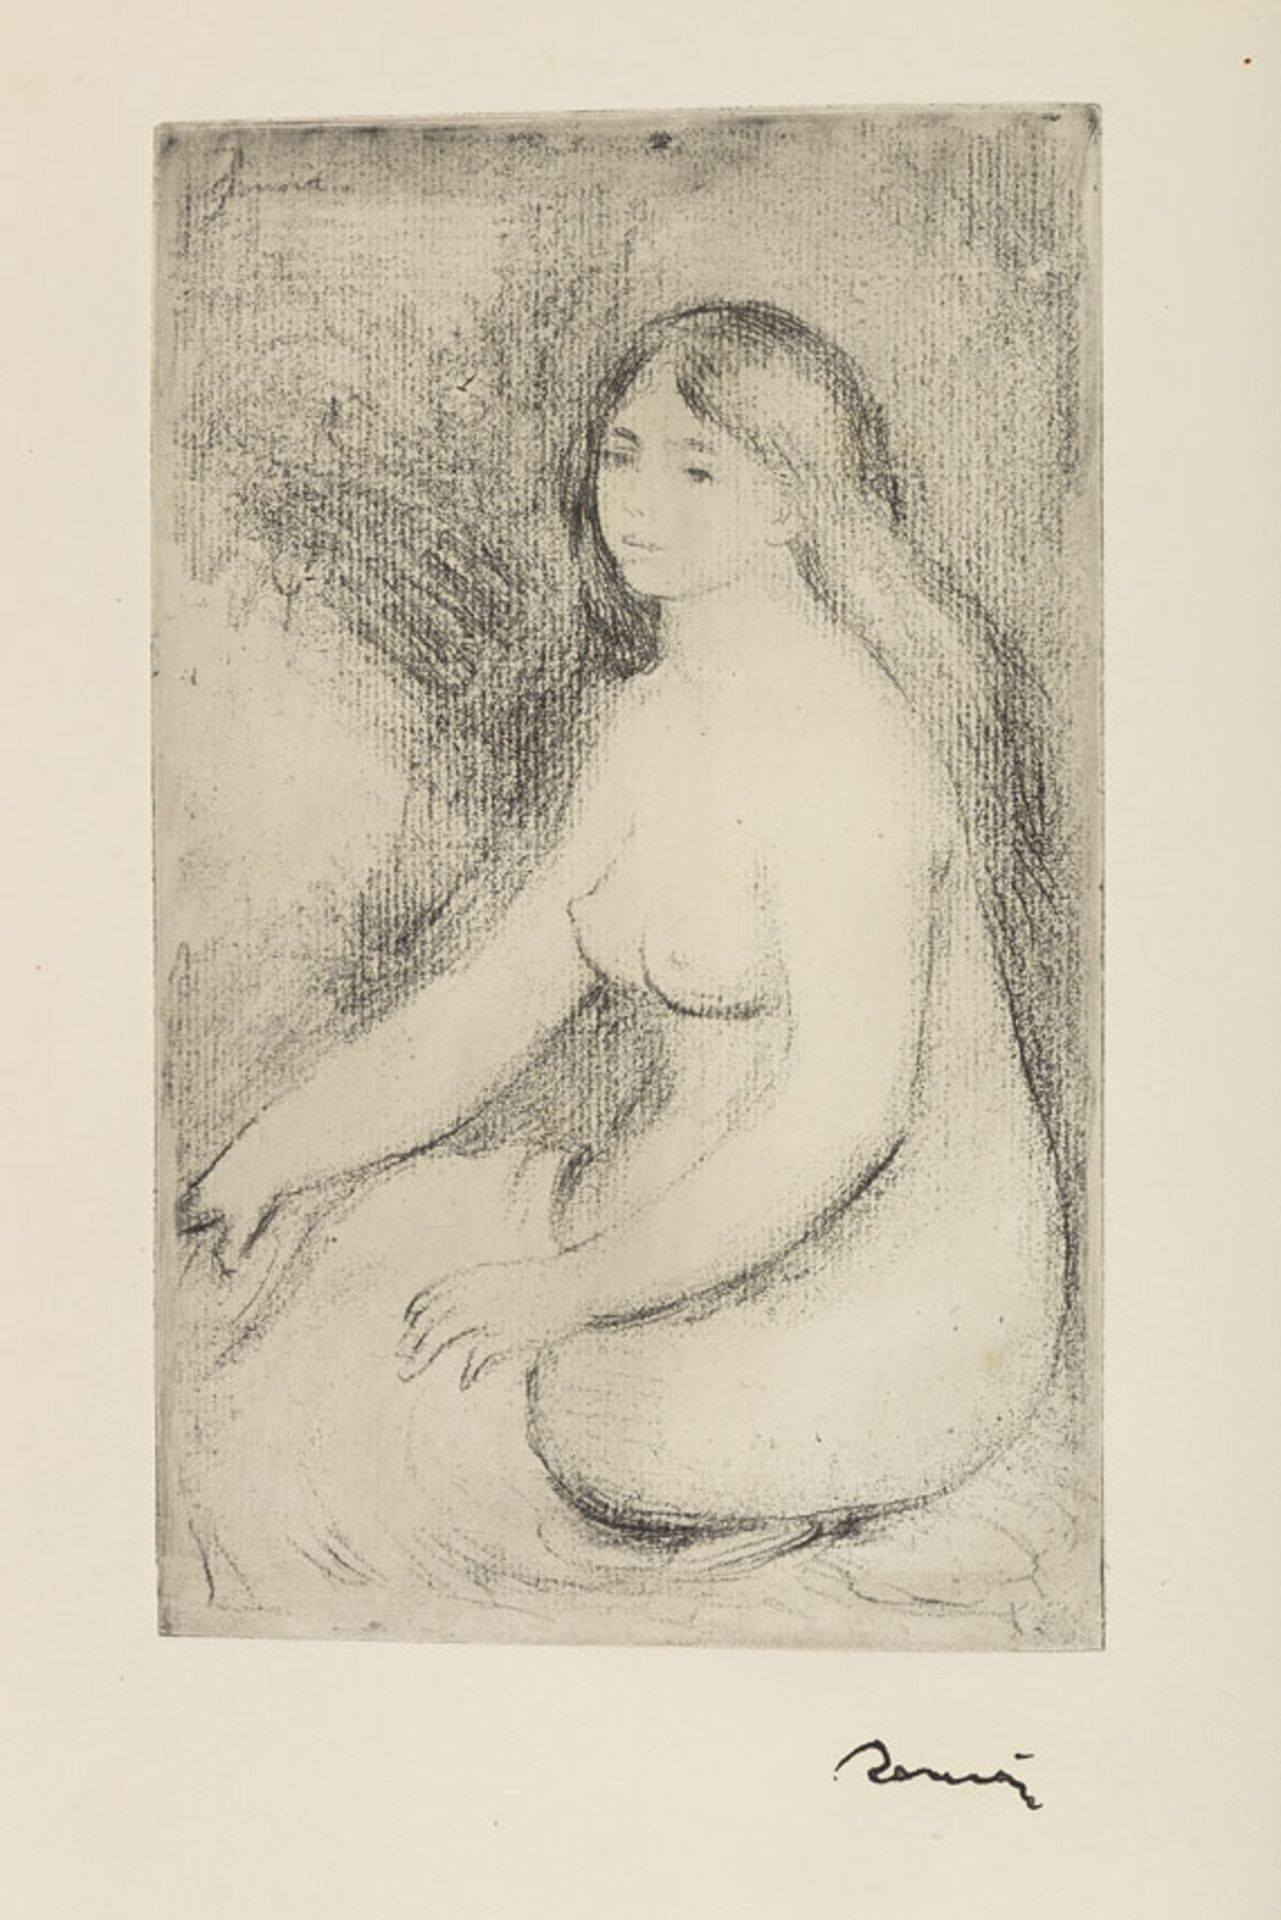 Ambroise Vollard, La vie & l'oeuvre de Pierre-Auguste Renoir. Paris, A. Vollard 1919.